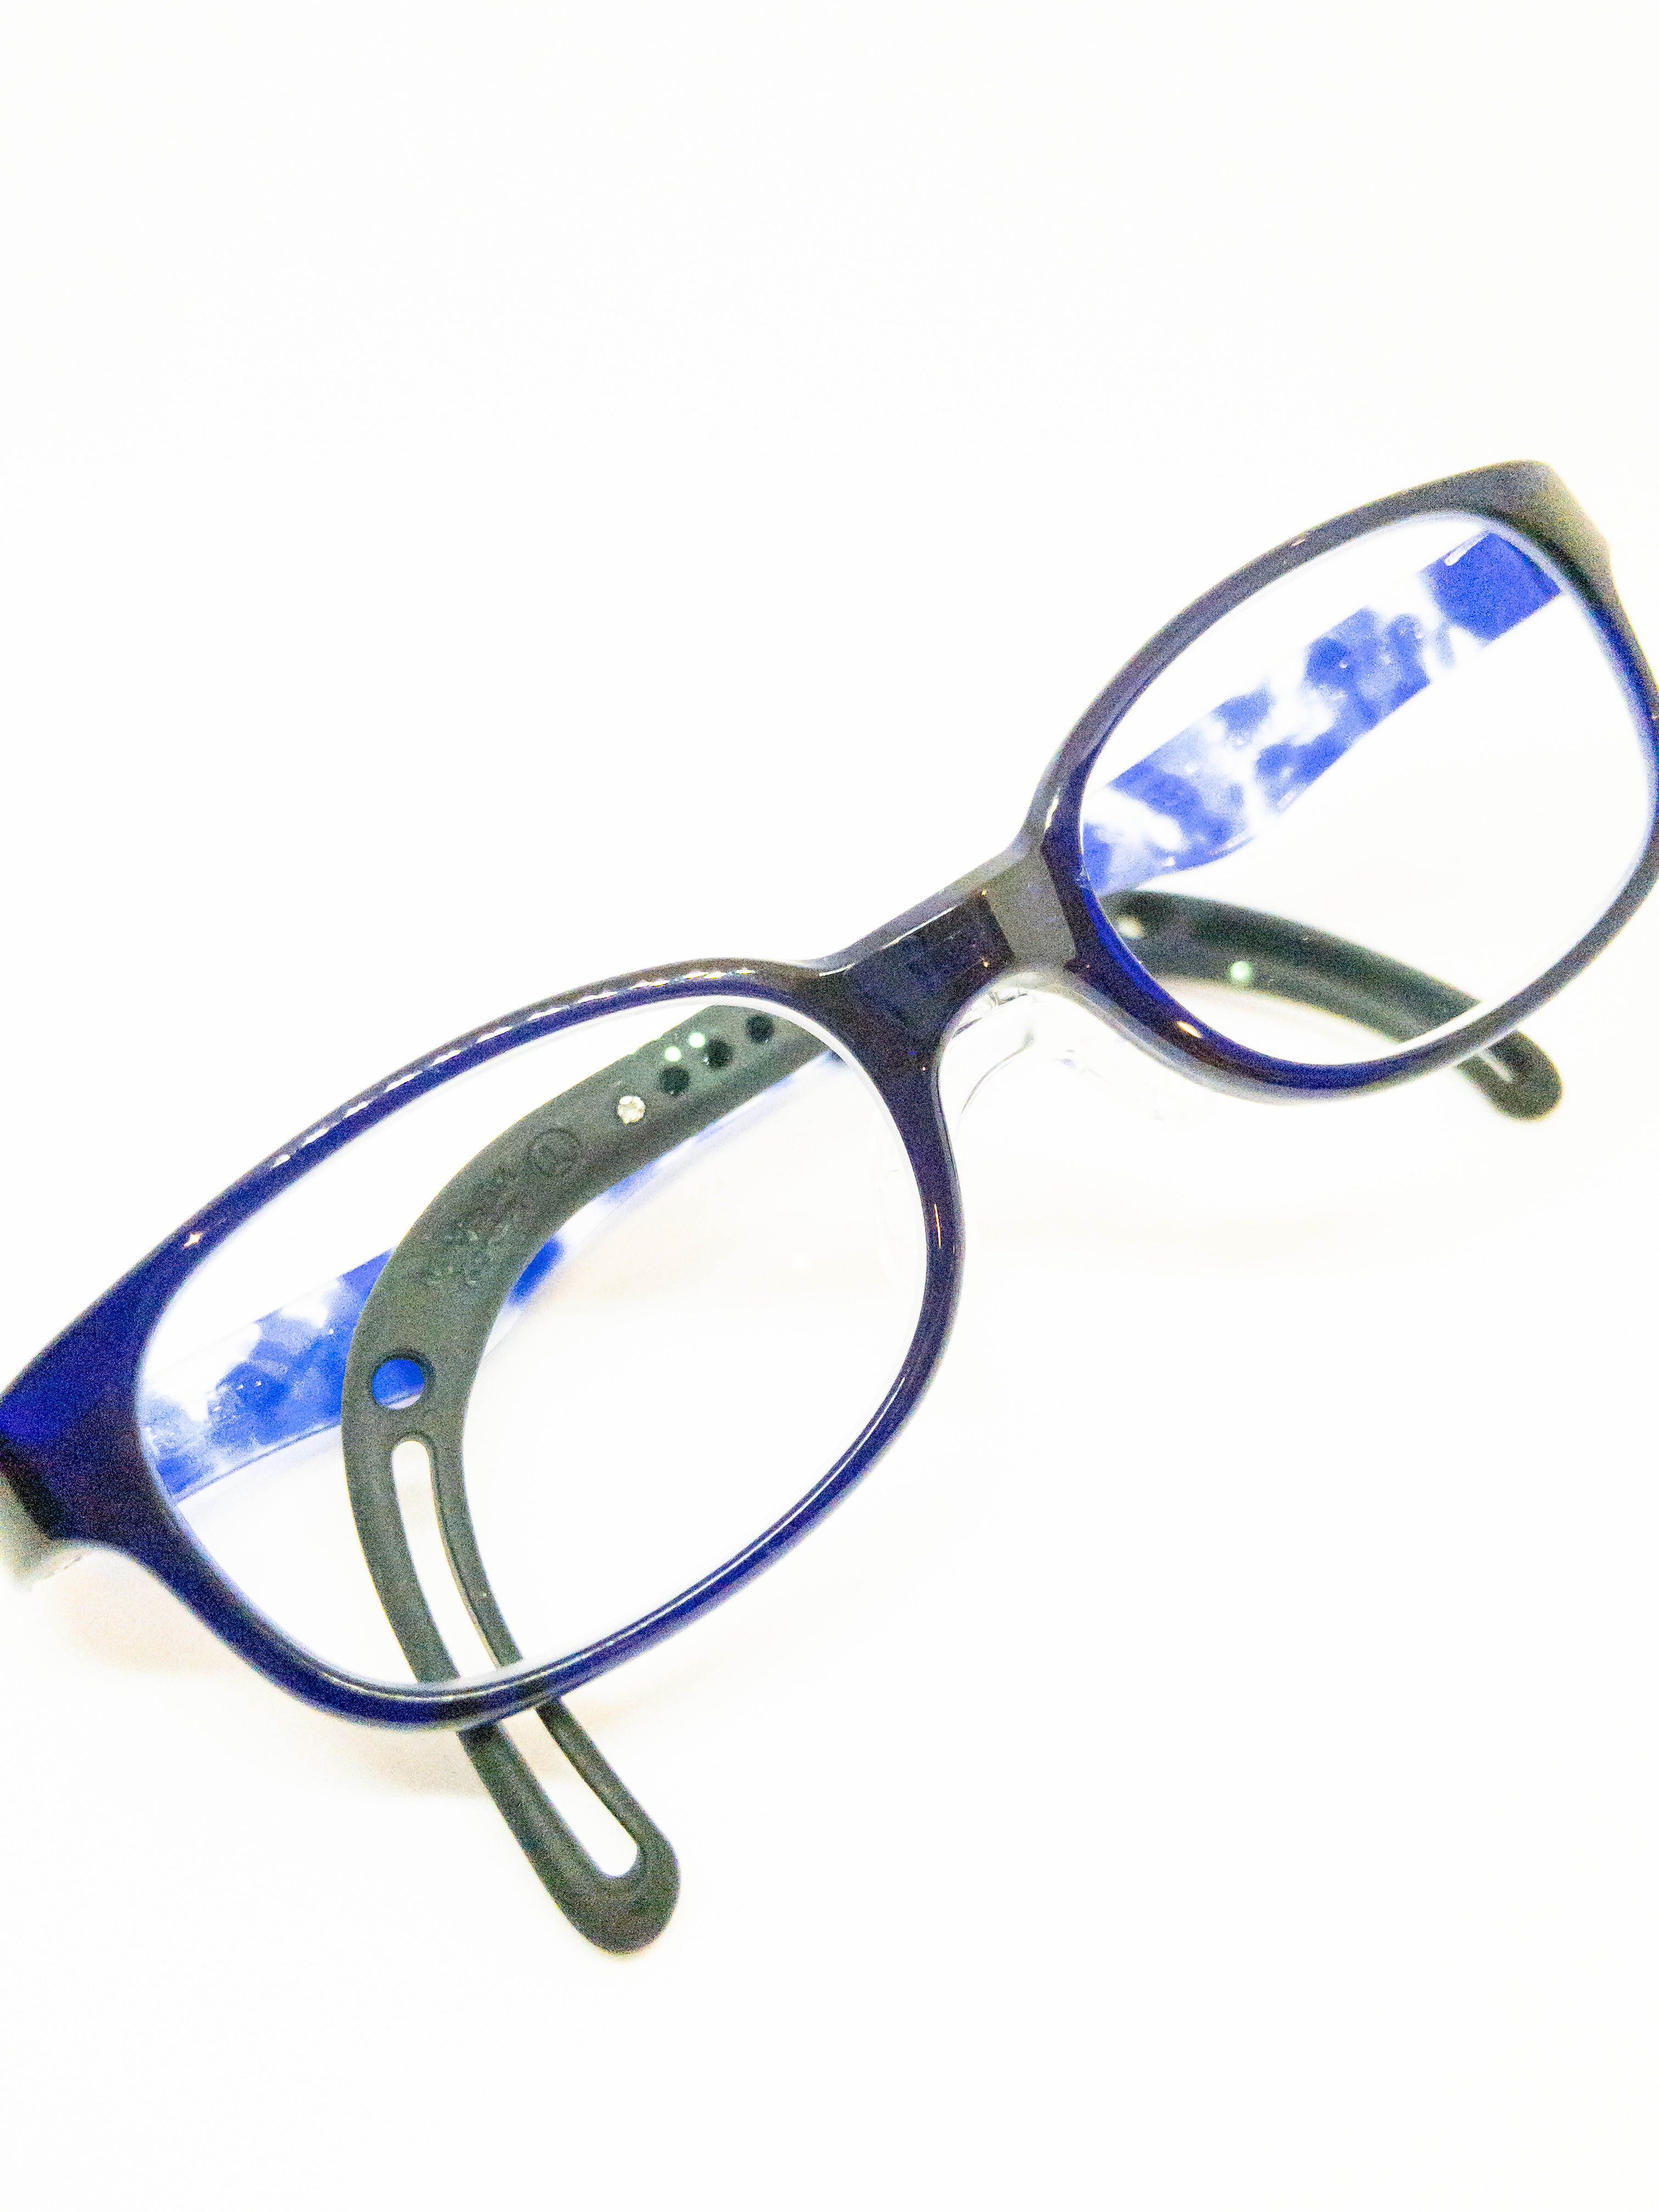 弱視治療用メガネ 3回目もトマトグラッシーズに決めた 三愛公式サイト 岐阜県羽島市のメガネ 時計 宝飾 補聴器